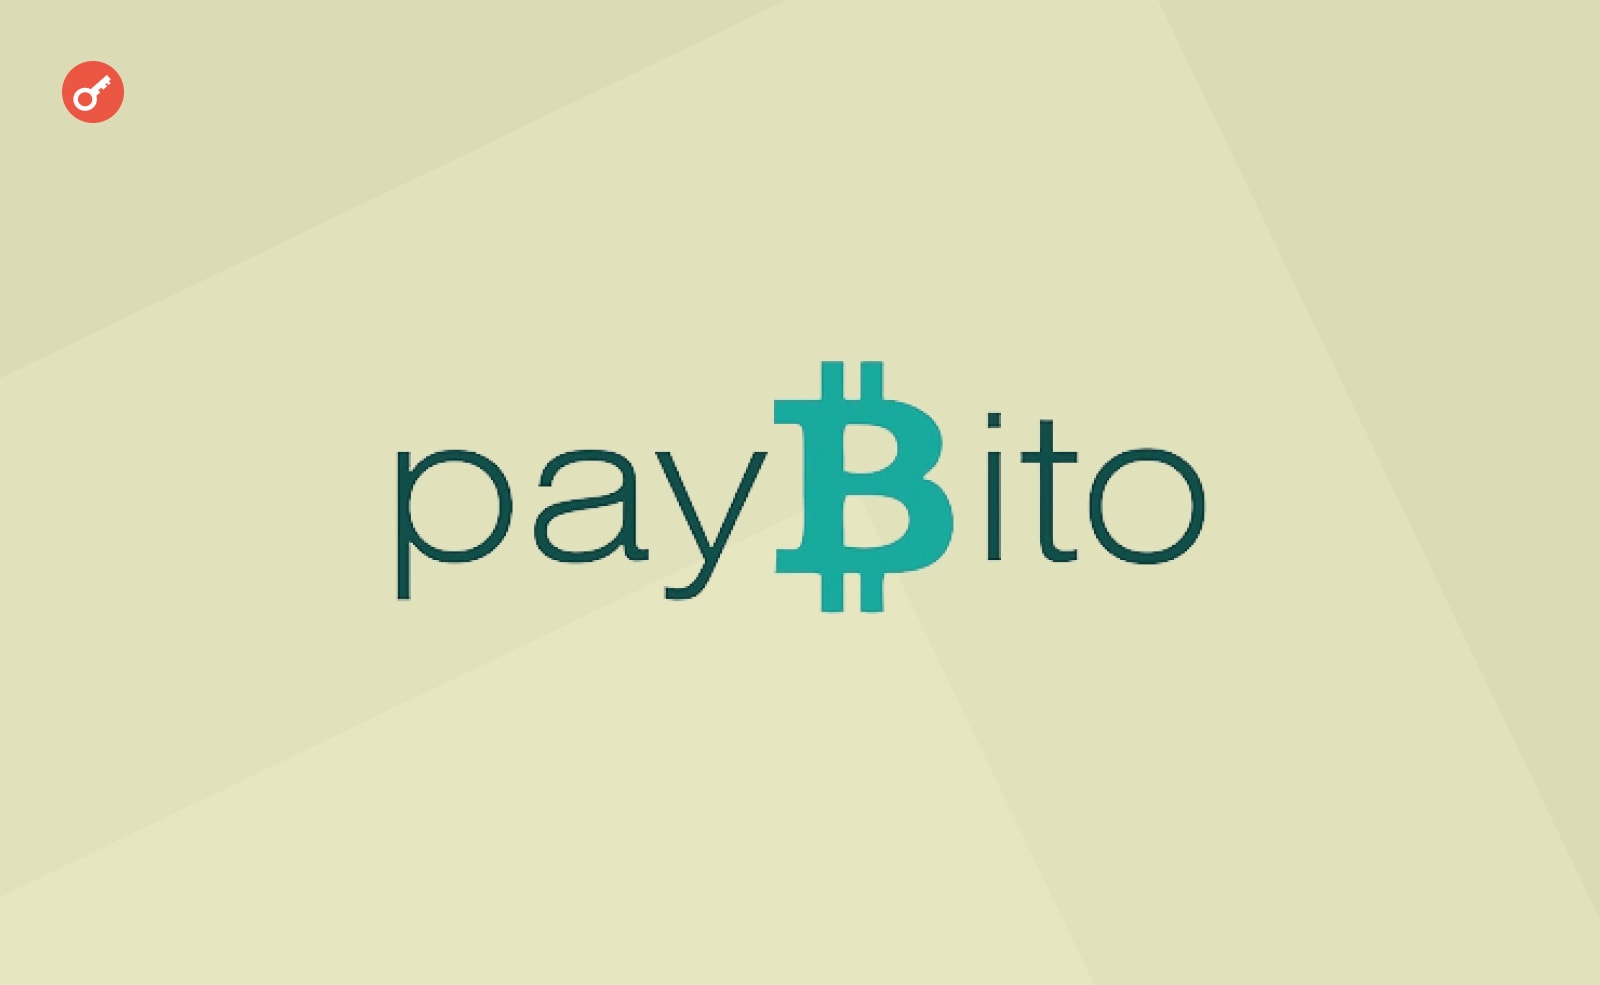 Криптобиржа PayBito интегрировала ChatGPT в свою платформу. Заглавный коллаж новости.